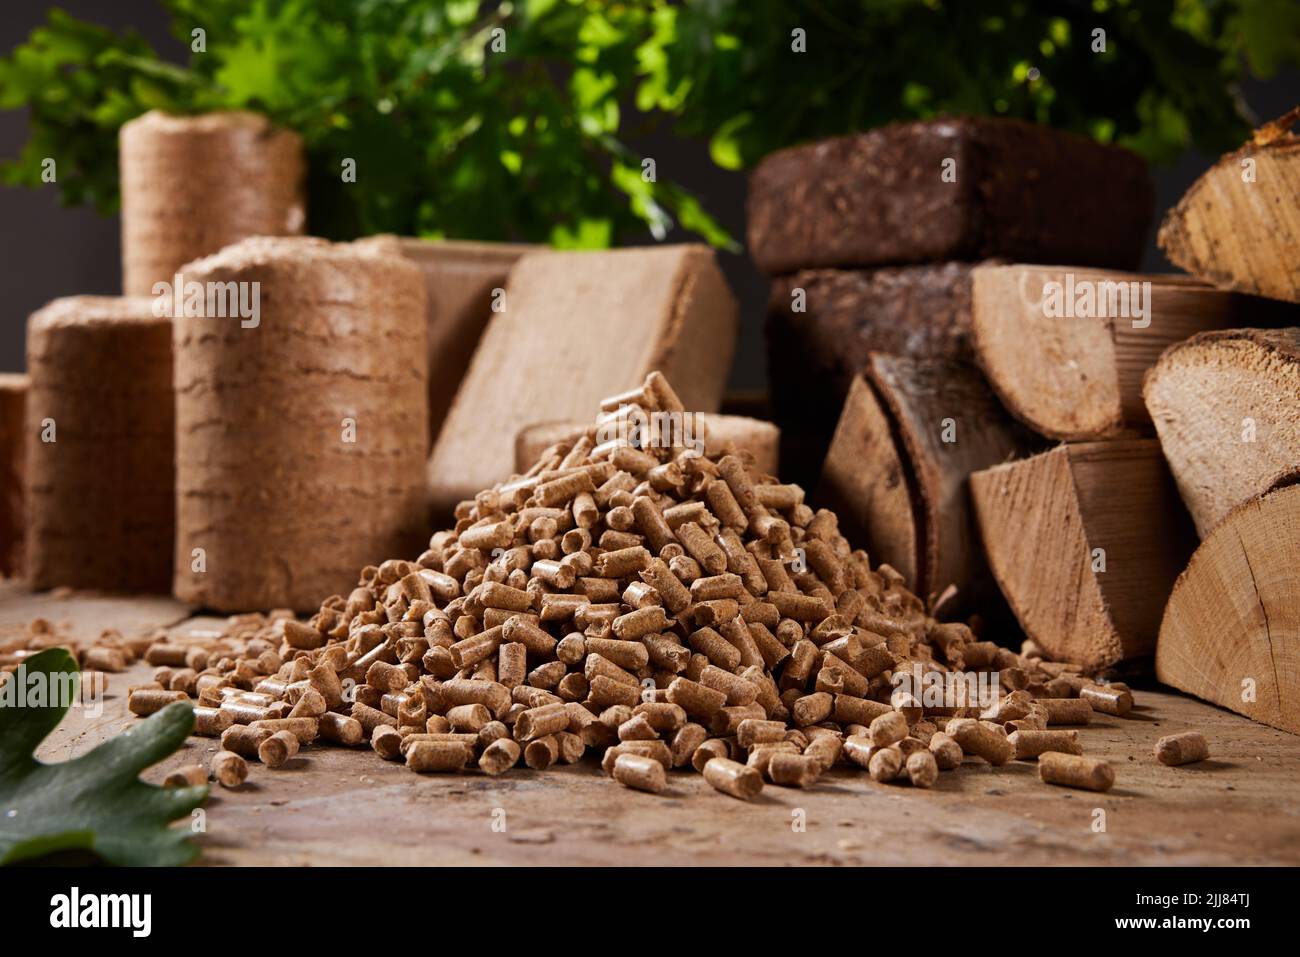 Pila de pellets de madera dispuestos sobre la mesa cerca de madera cortada y briquetas de biomasa comprimida contra frondoso árbol verde durante el día Foto de stock